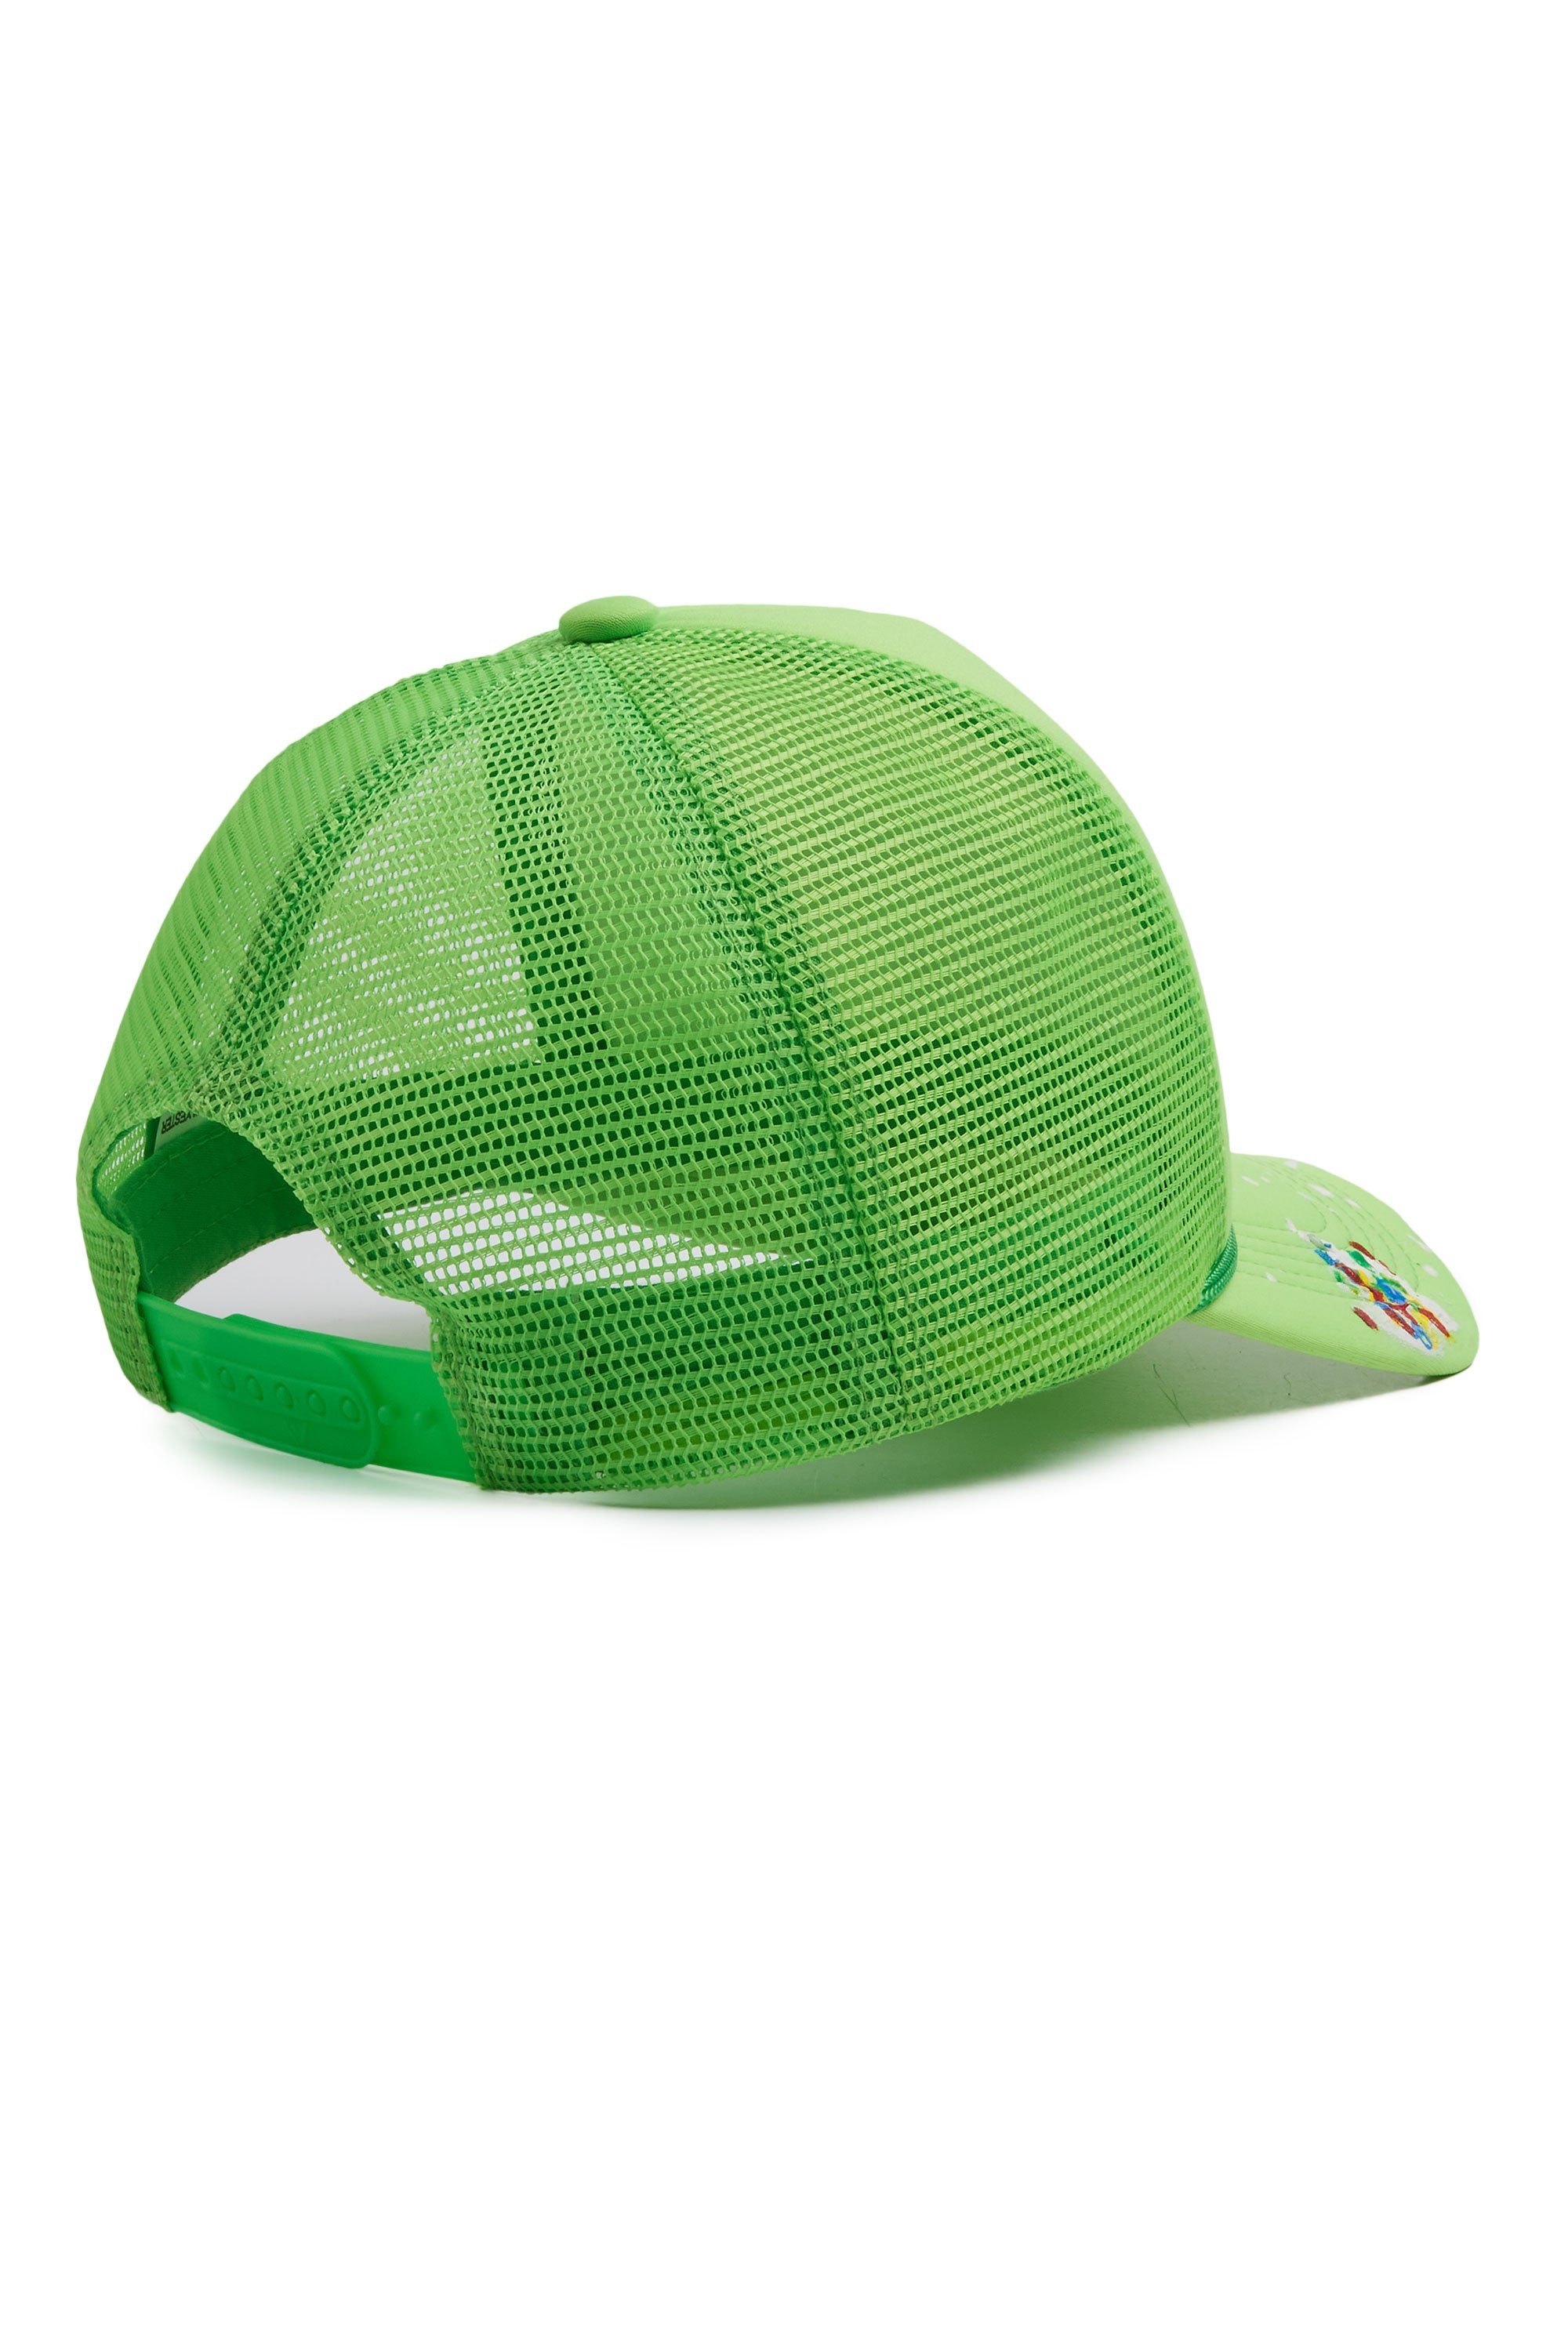 Neptune Neon Green Trucker Hat